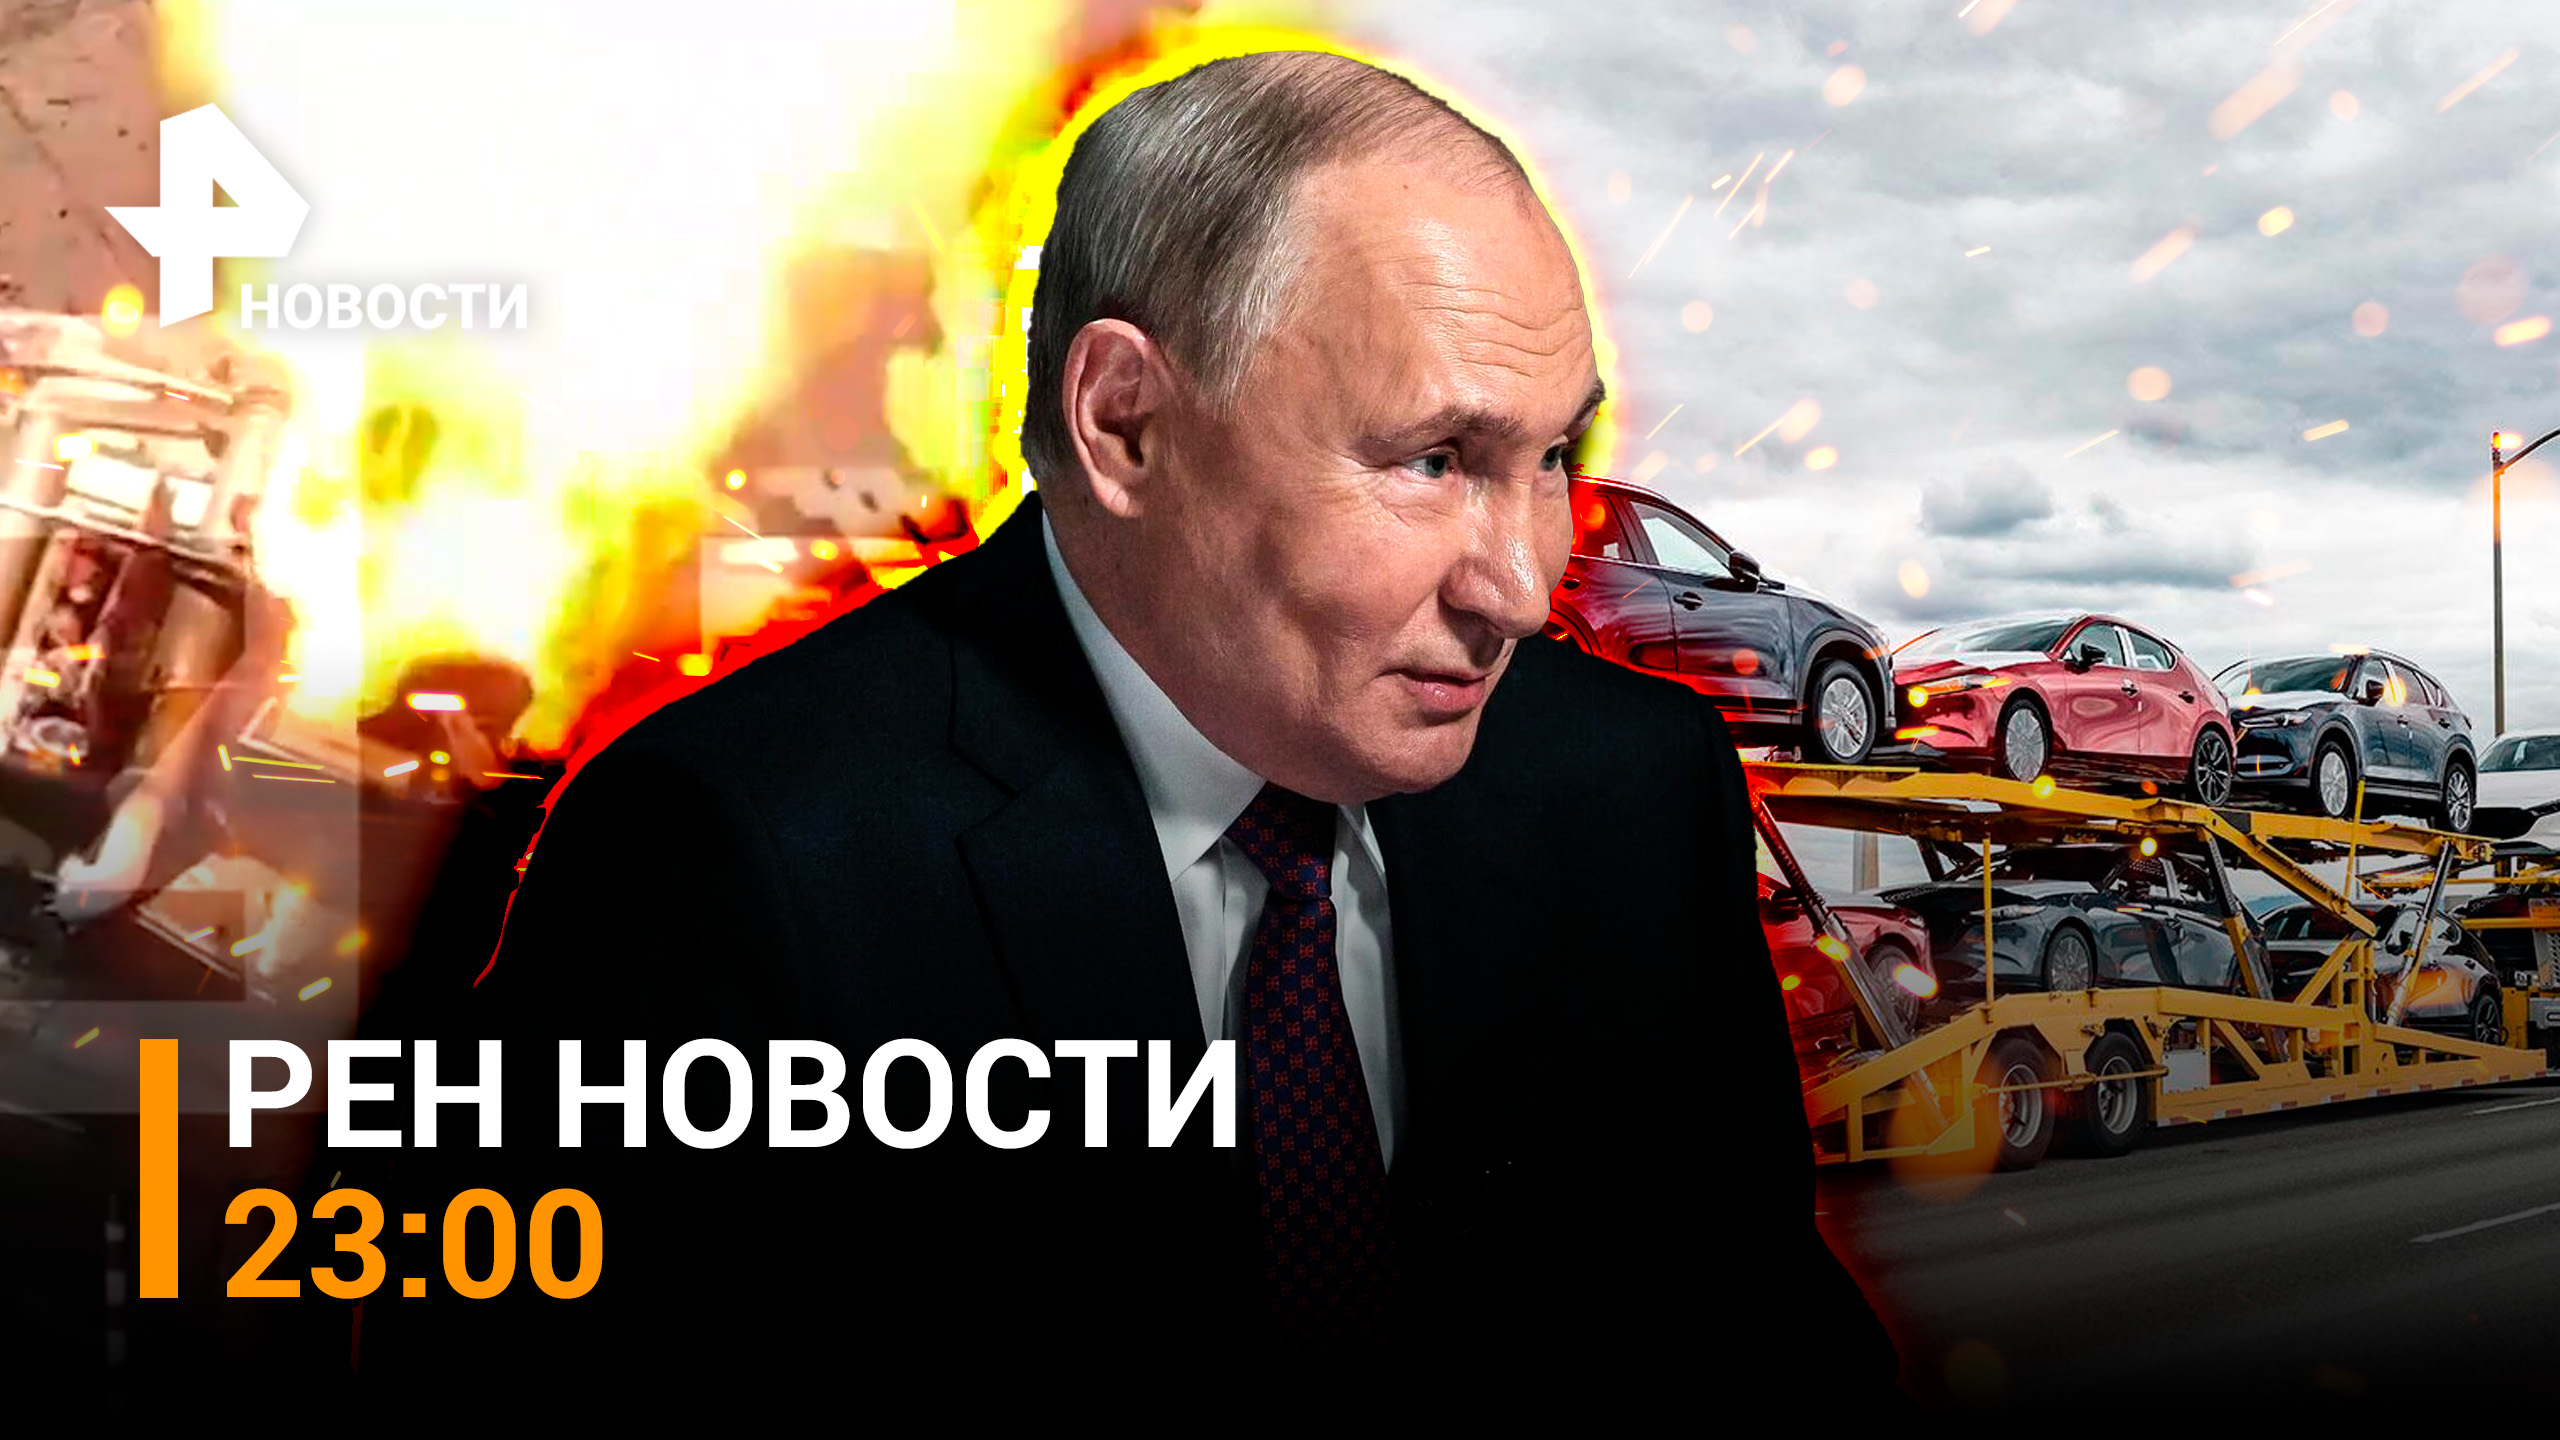 Попытка прорыва ВСУ обратилась мощным провалом / Большое интервью Путина / РЕН НОВОСТИ 13.03, 23:00